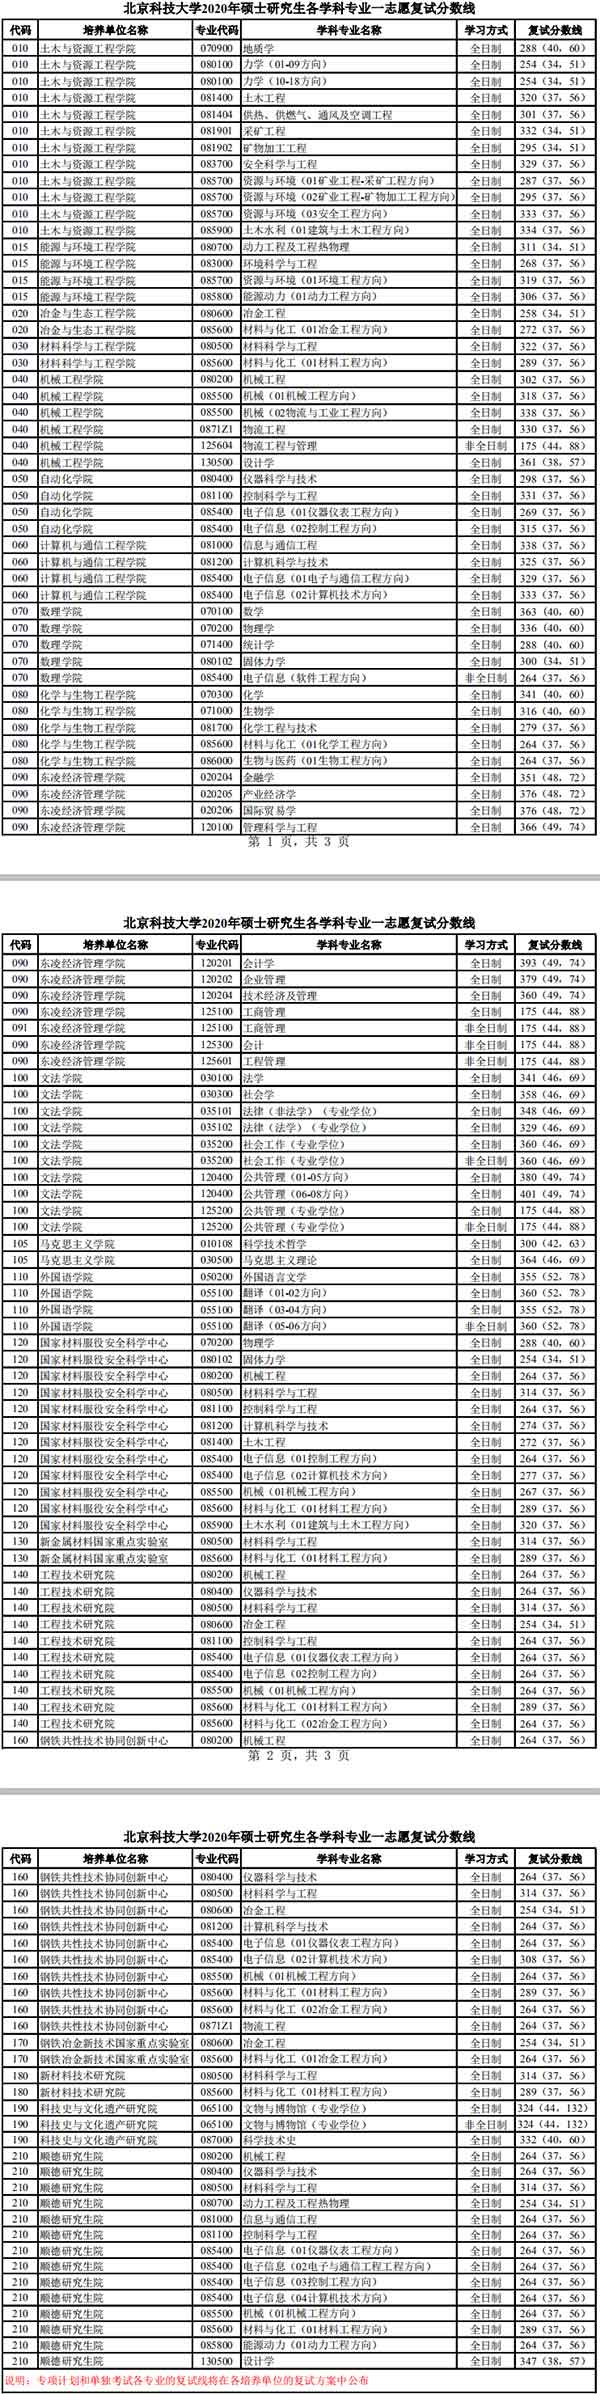 北京科技大学2020研究生复试分数线.jpg